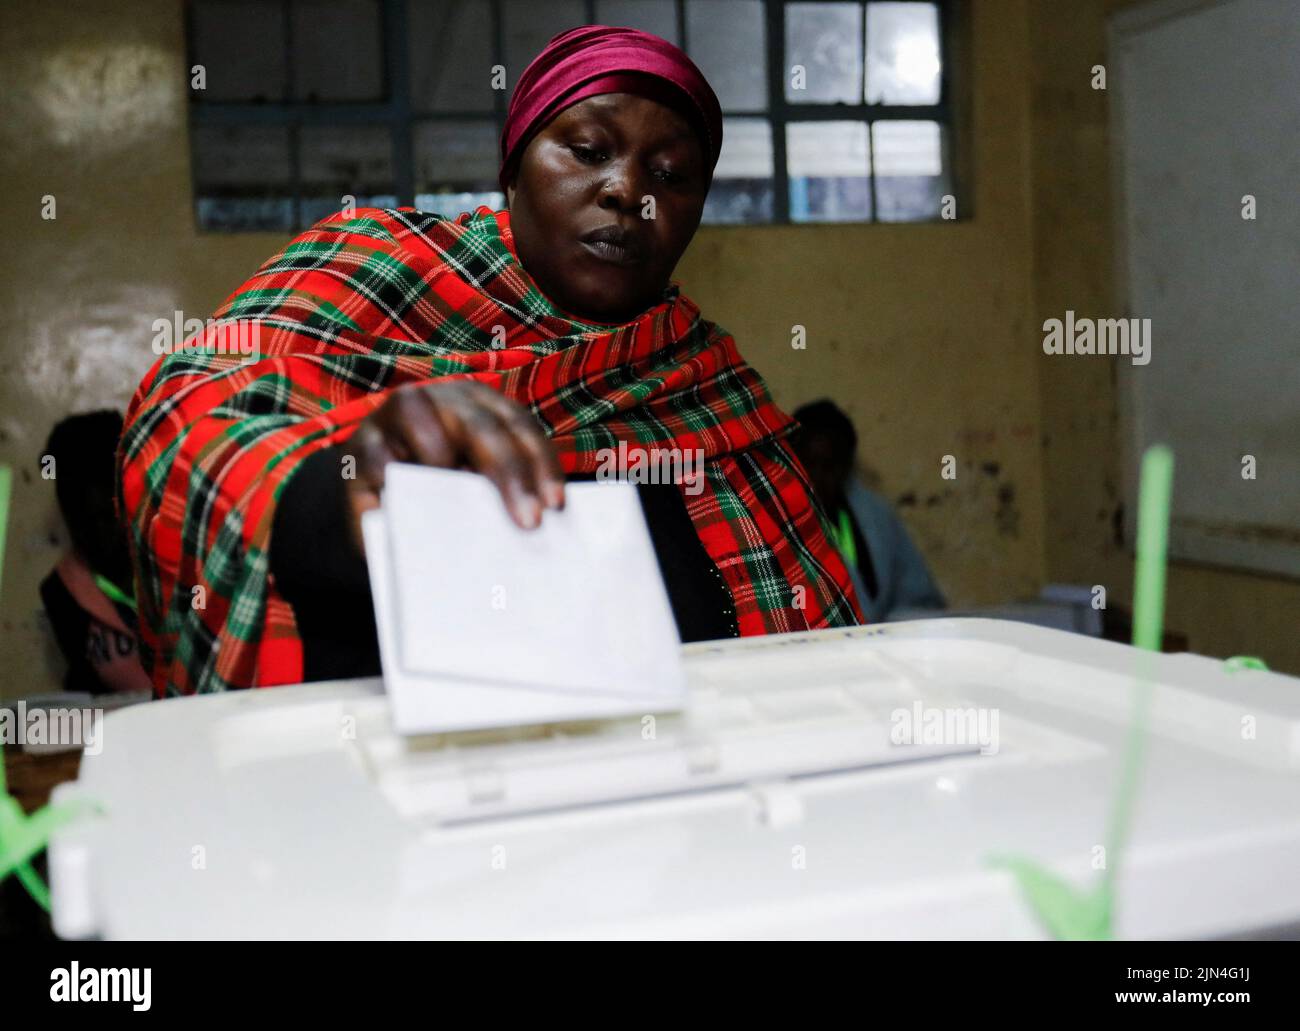 Una votante deposita su voto durante las elecciones generales de la Comisión Electoral Independiente y de Fronteras (IEBC) en la escuela primaria de Kibera en Nairobi, Kenia, el 9 de agosto de 2022. REUTERS/Thomas Mukoya Foto de stock